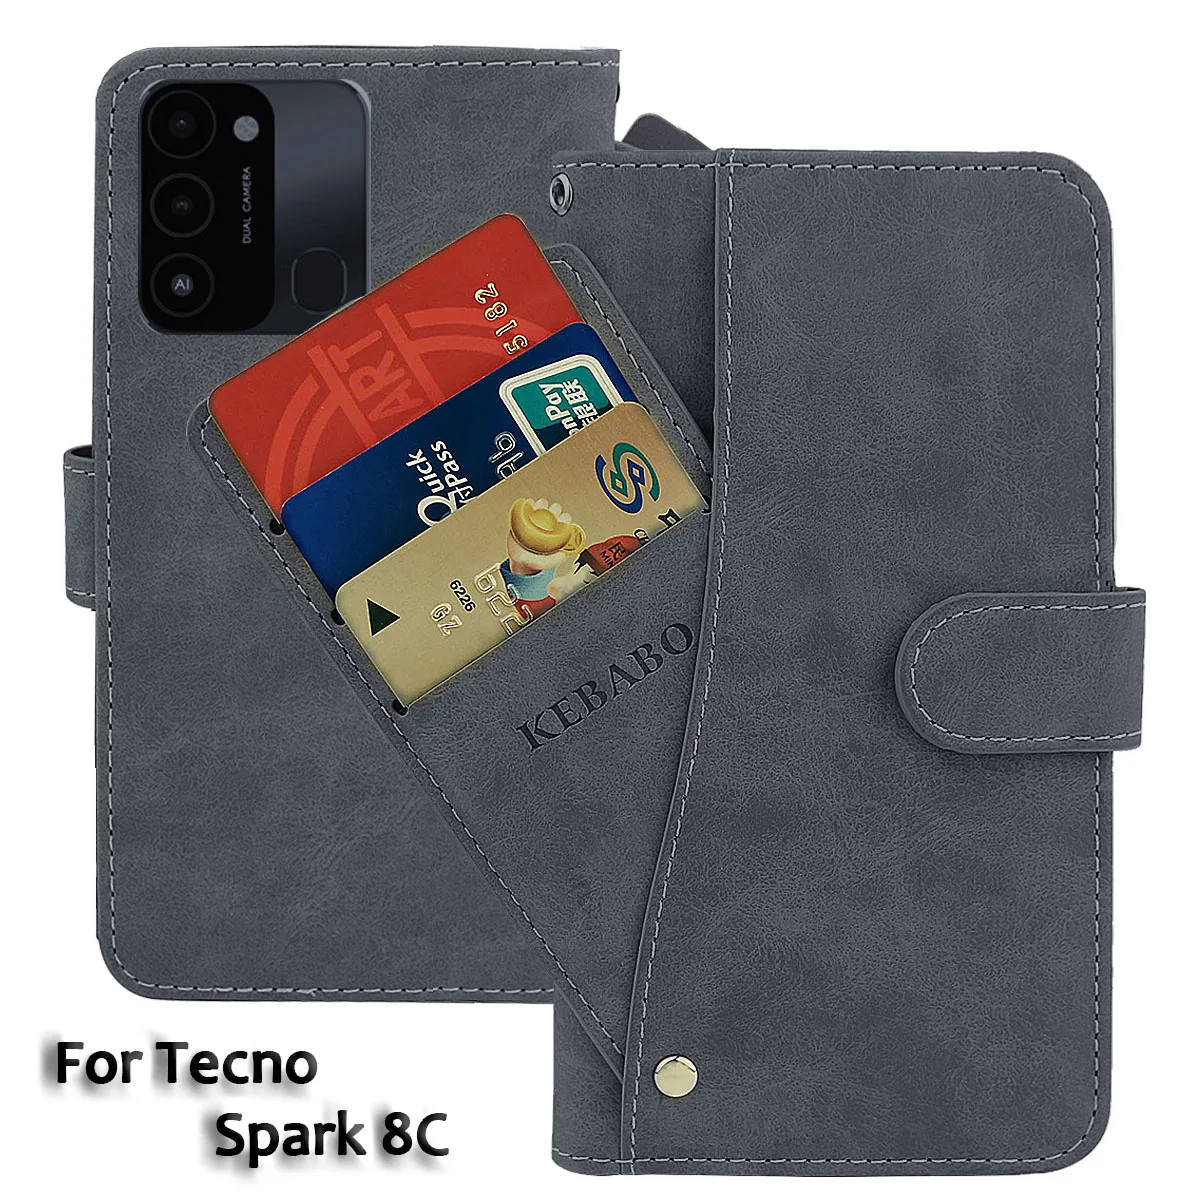 

Кожаный чехол-кошелек Tecno Spark 8C, модный роскошный флип-чехол 6,6 дюйма с передней картой Spark 8C Tecno, магнитные чехлы для телефонов